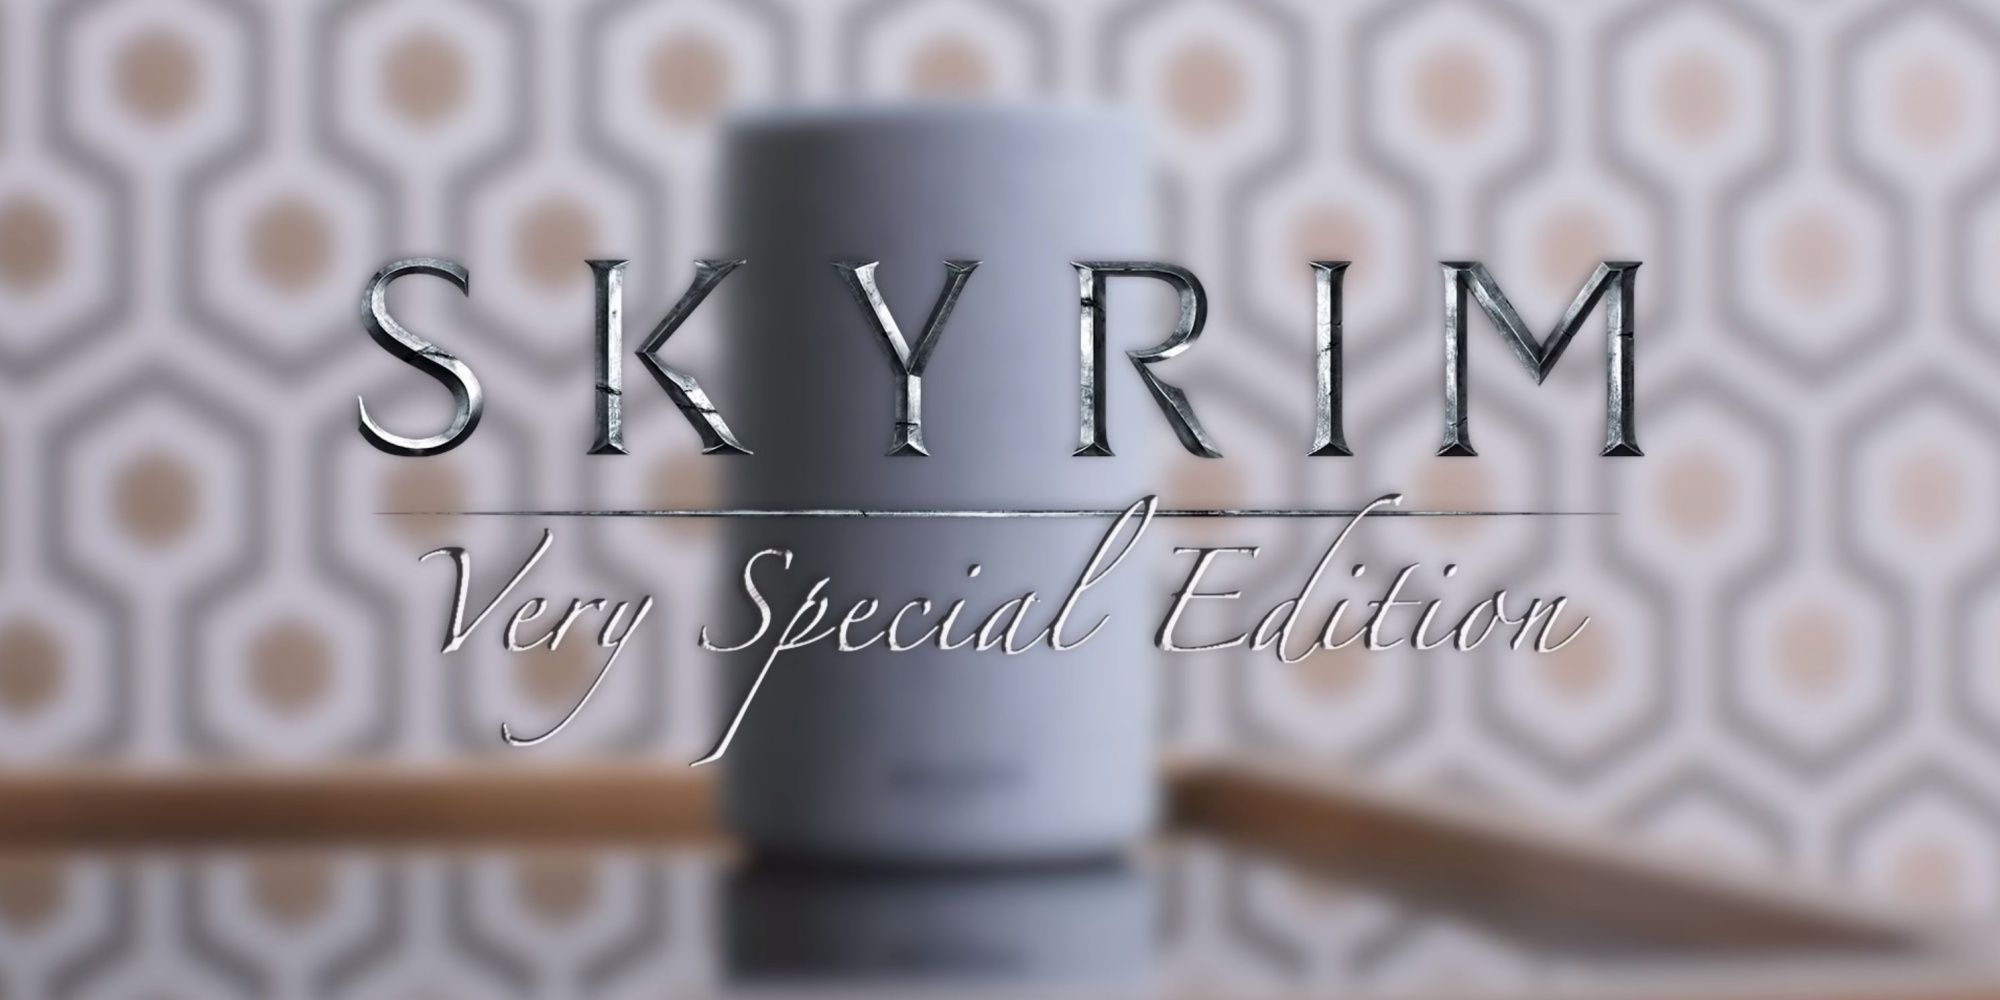 Skyrim Very Special Edition